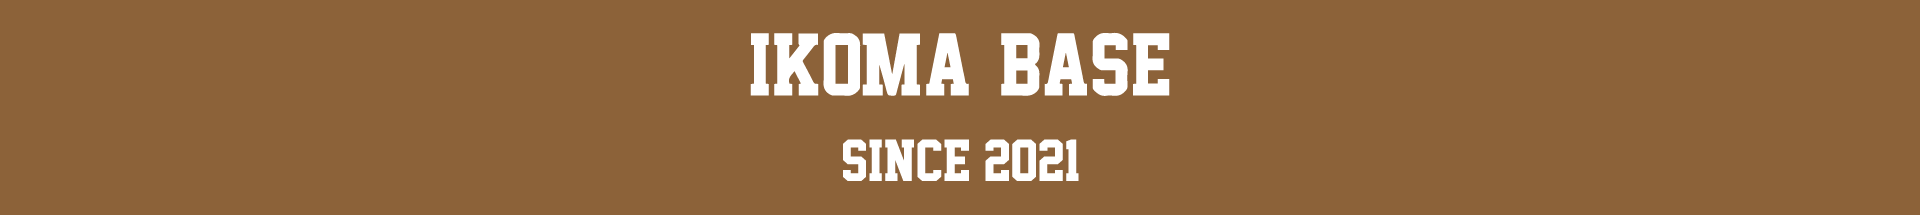 IKOMA BASE since 2021